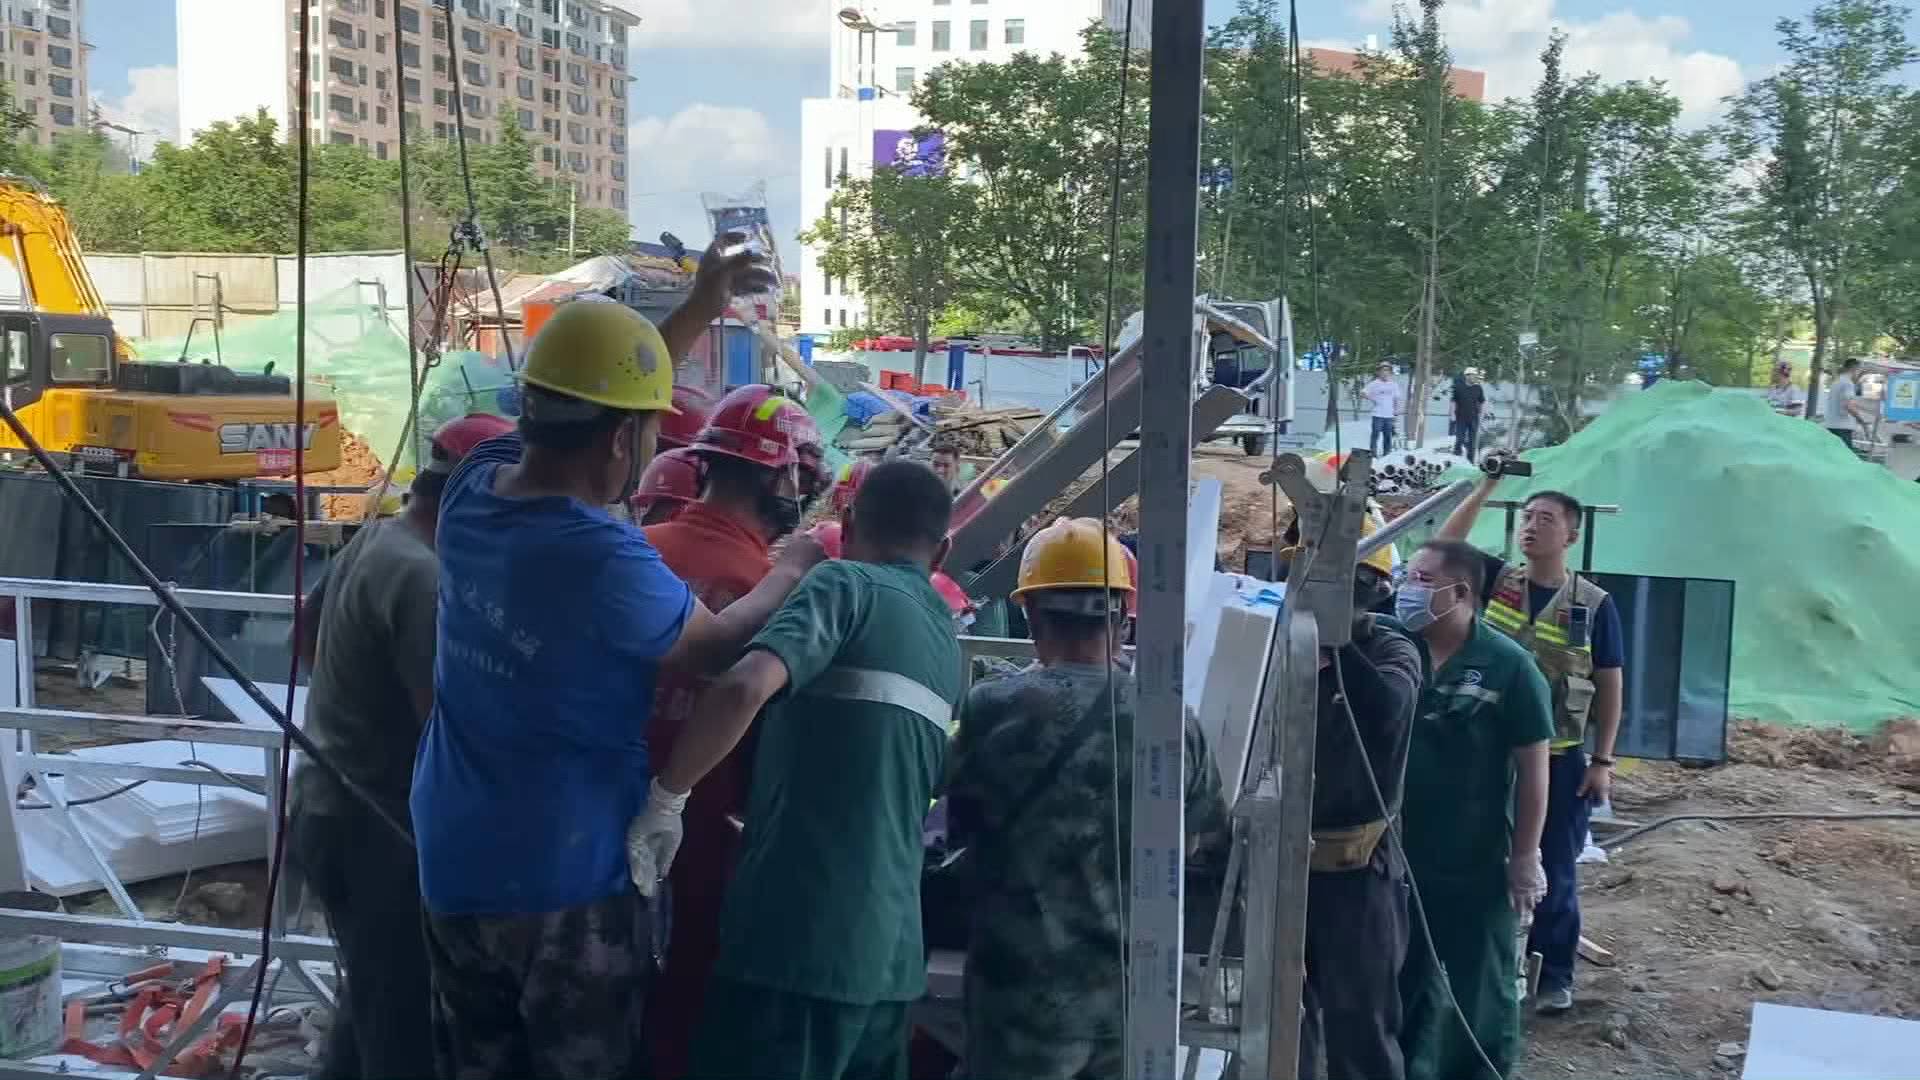 直径8厘米钢管“从天而落”穿透男子身体 淄博消防员接警紧急营救